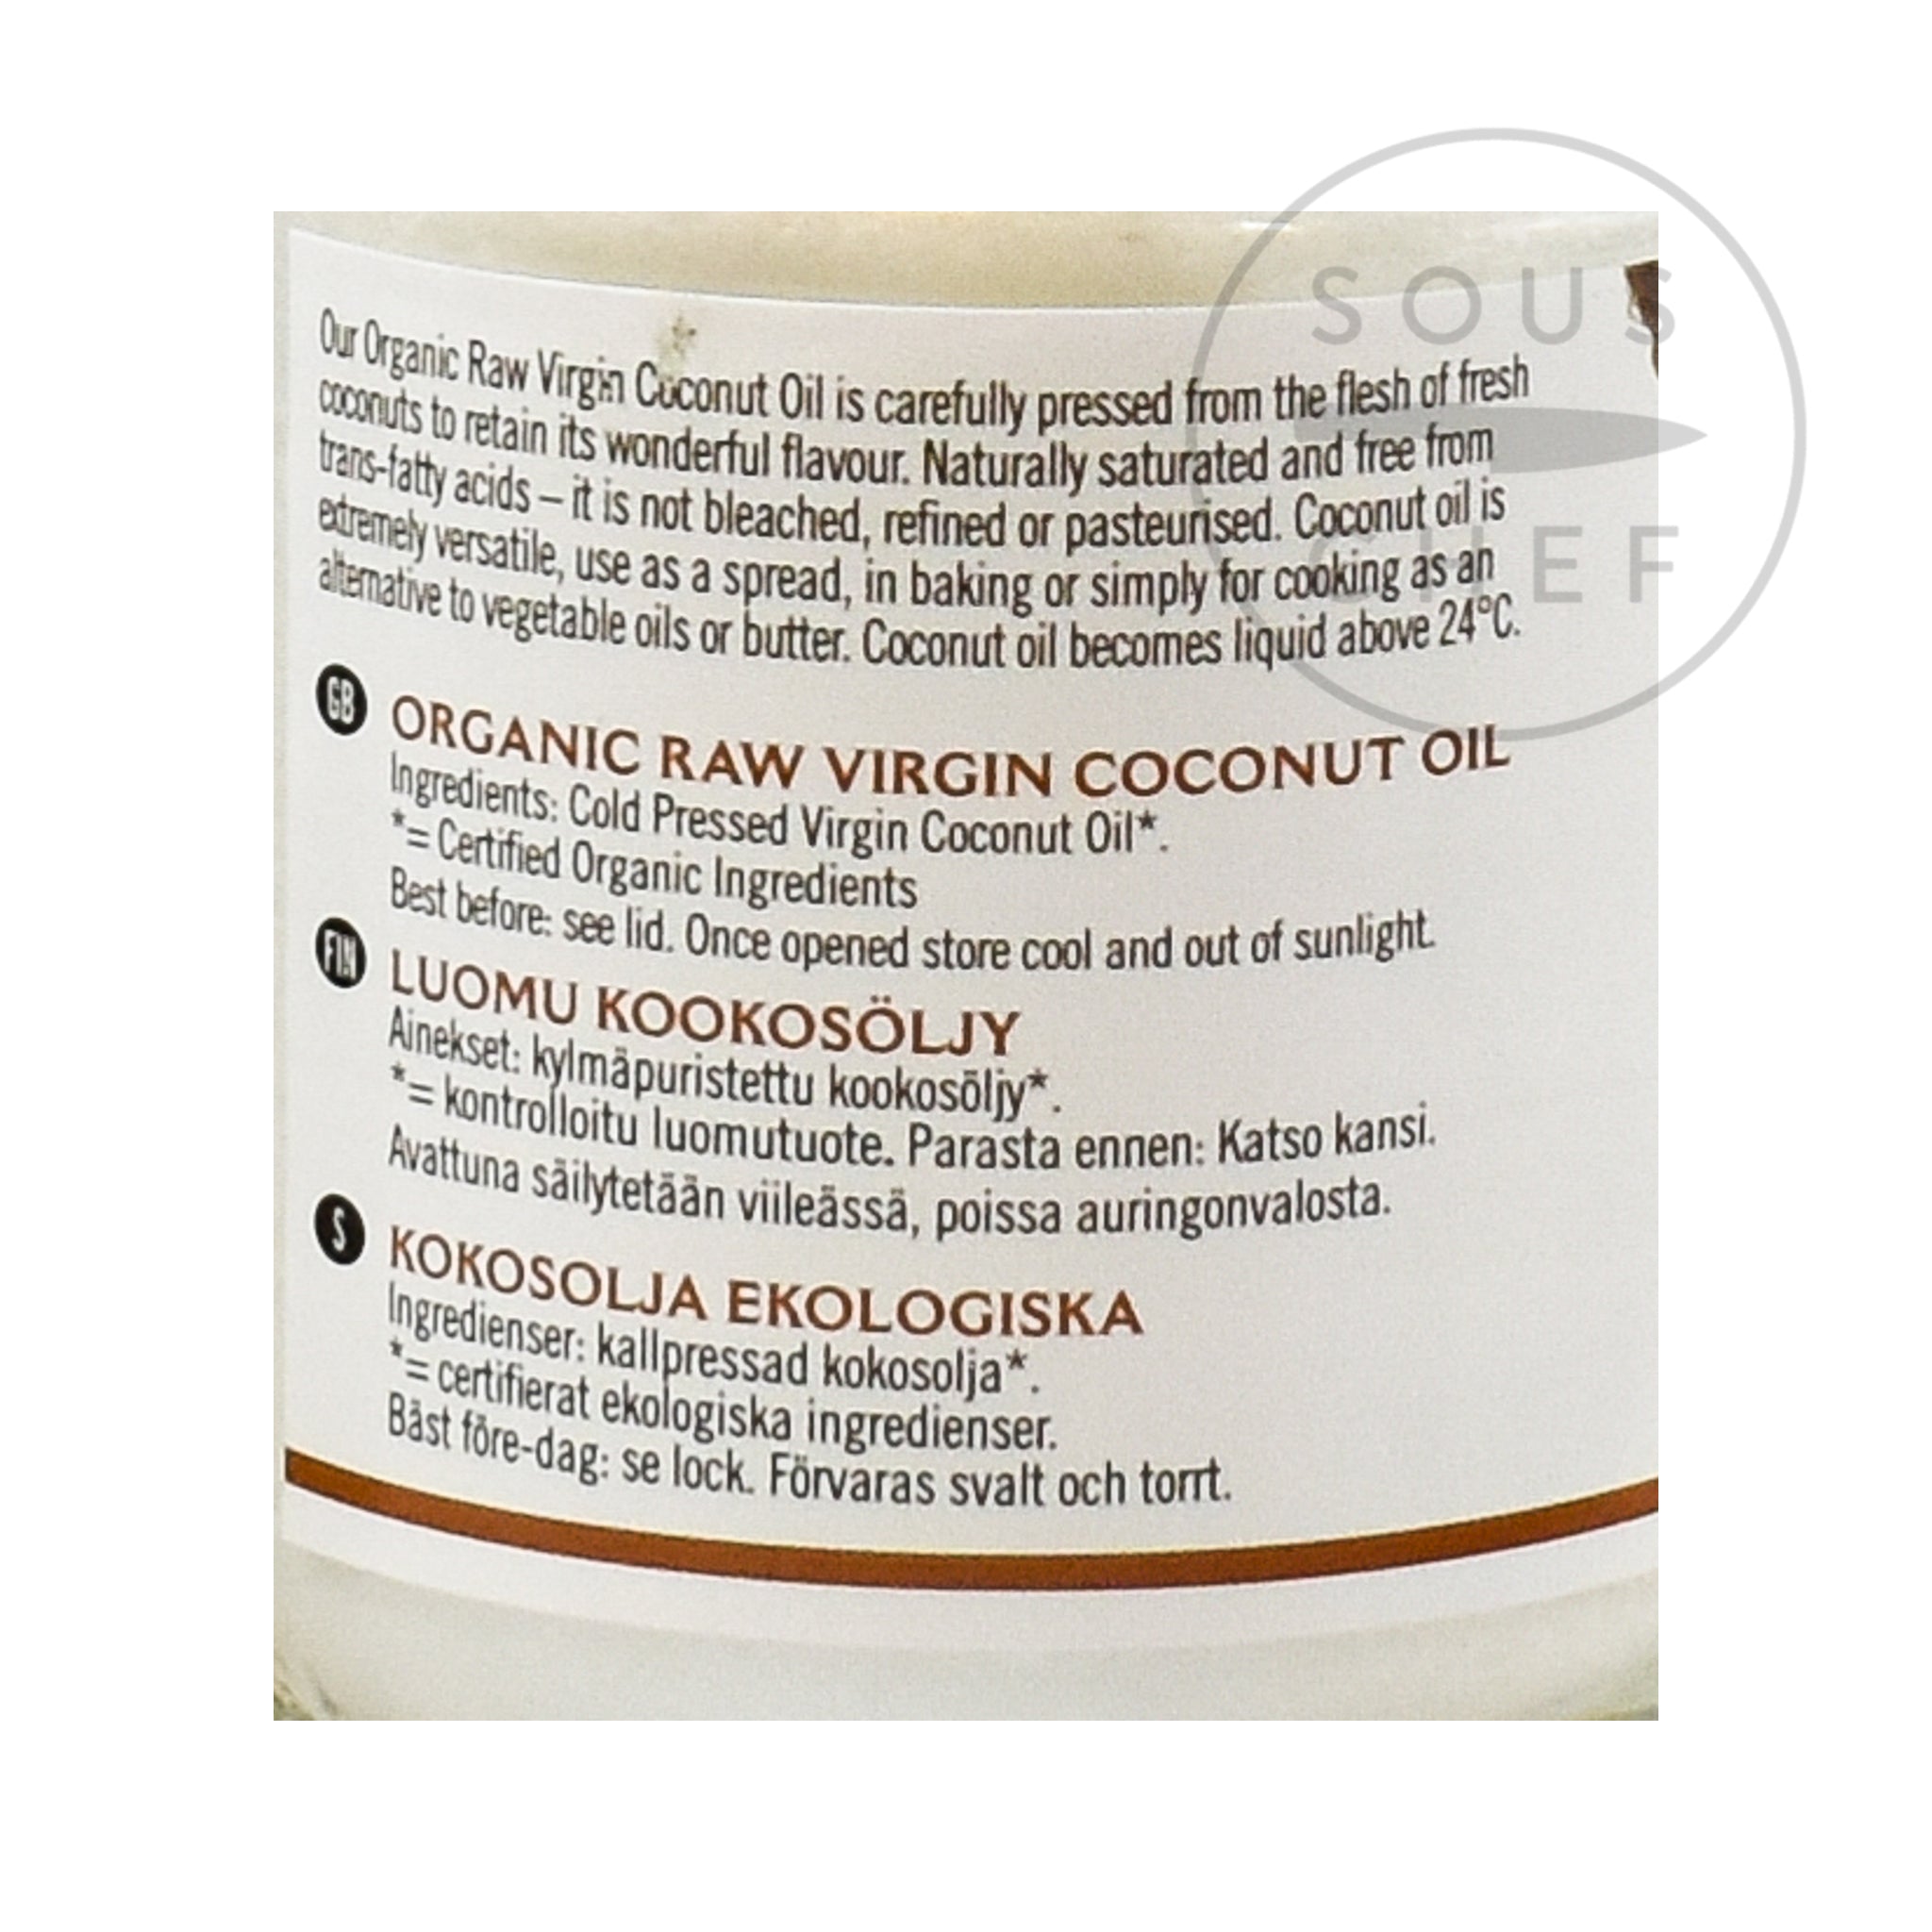 Organic Virgin Coconut Oil 200ml ingredients